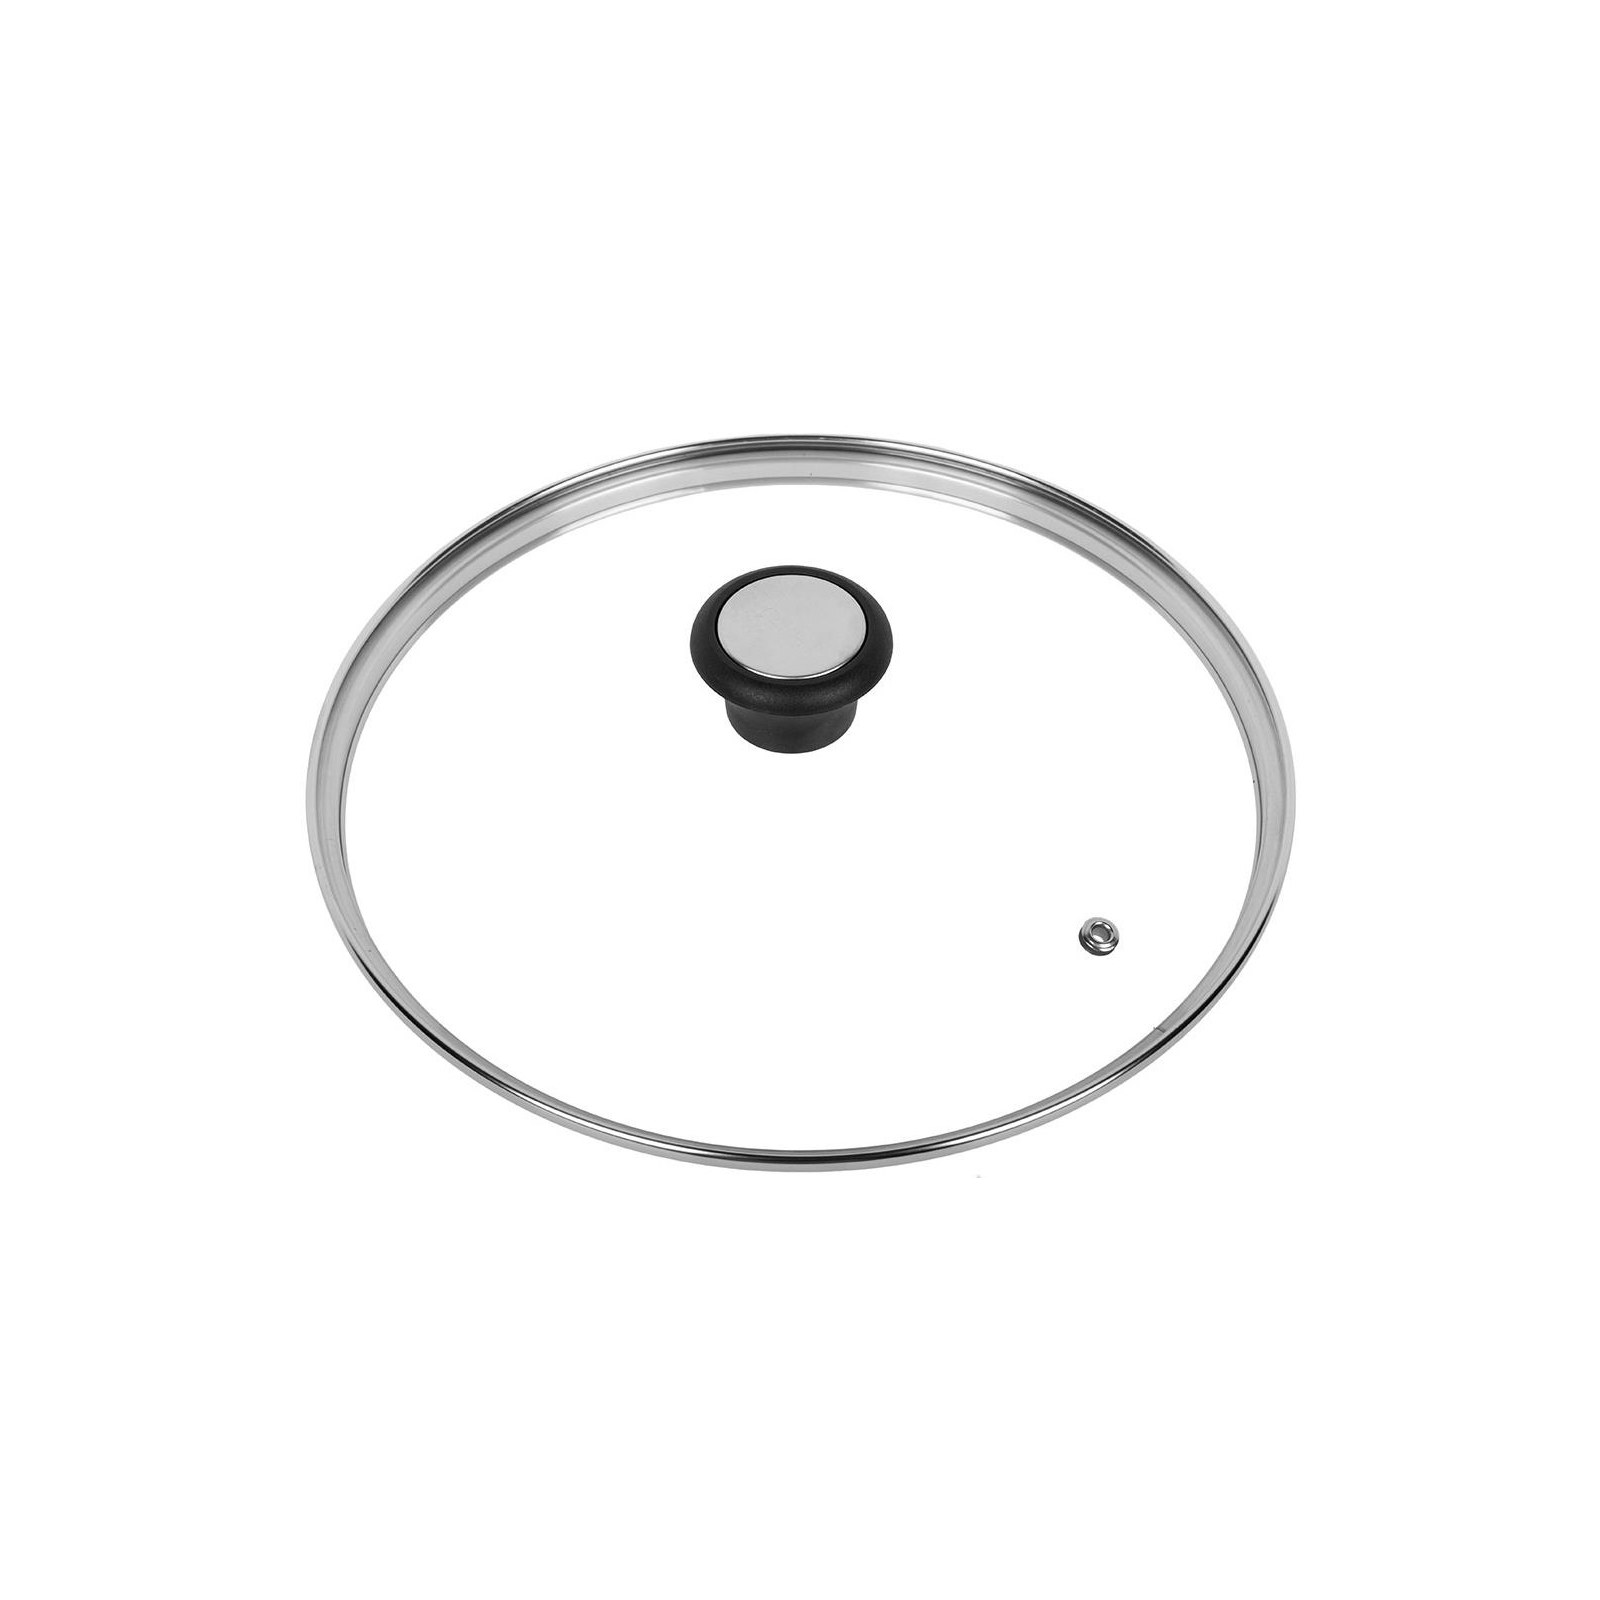 Крышка для посуды Tefal Glass bulbous 28 см (28097712) изображение 2